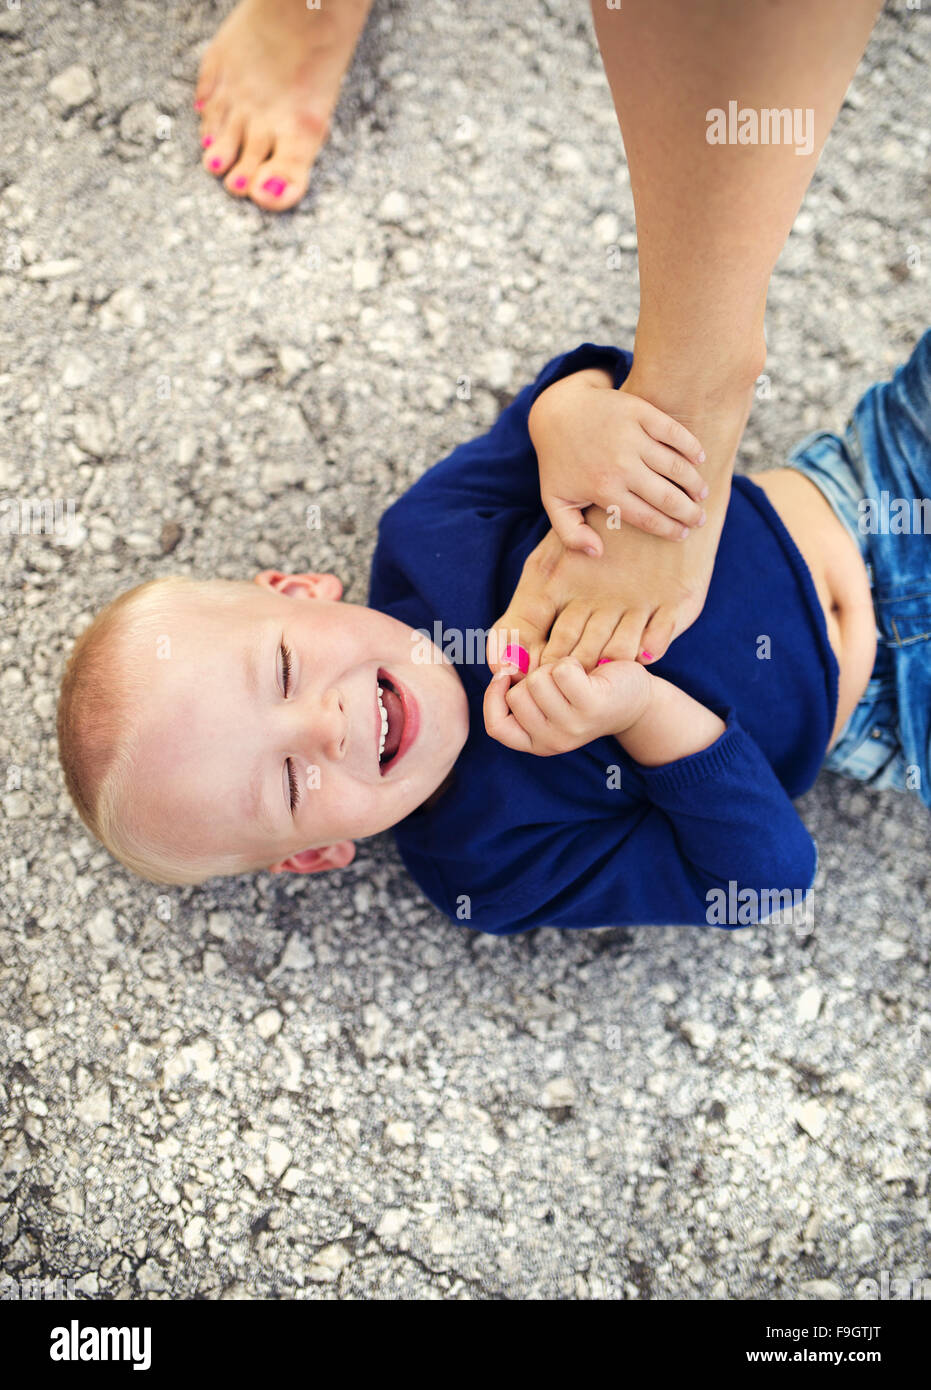 Petit garçon allongé sur le sol à jouer avec cette mère Banque D'Images